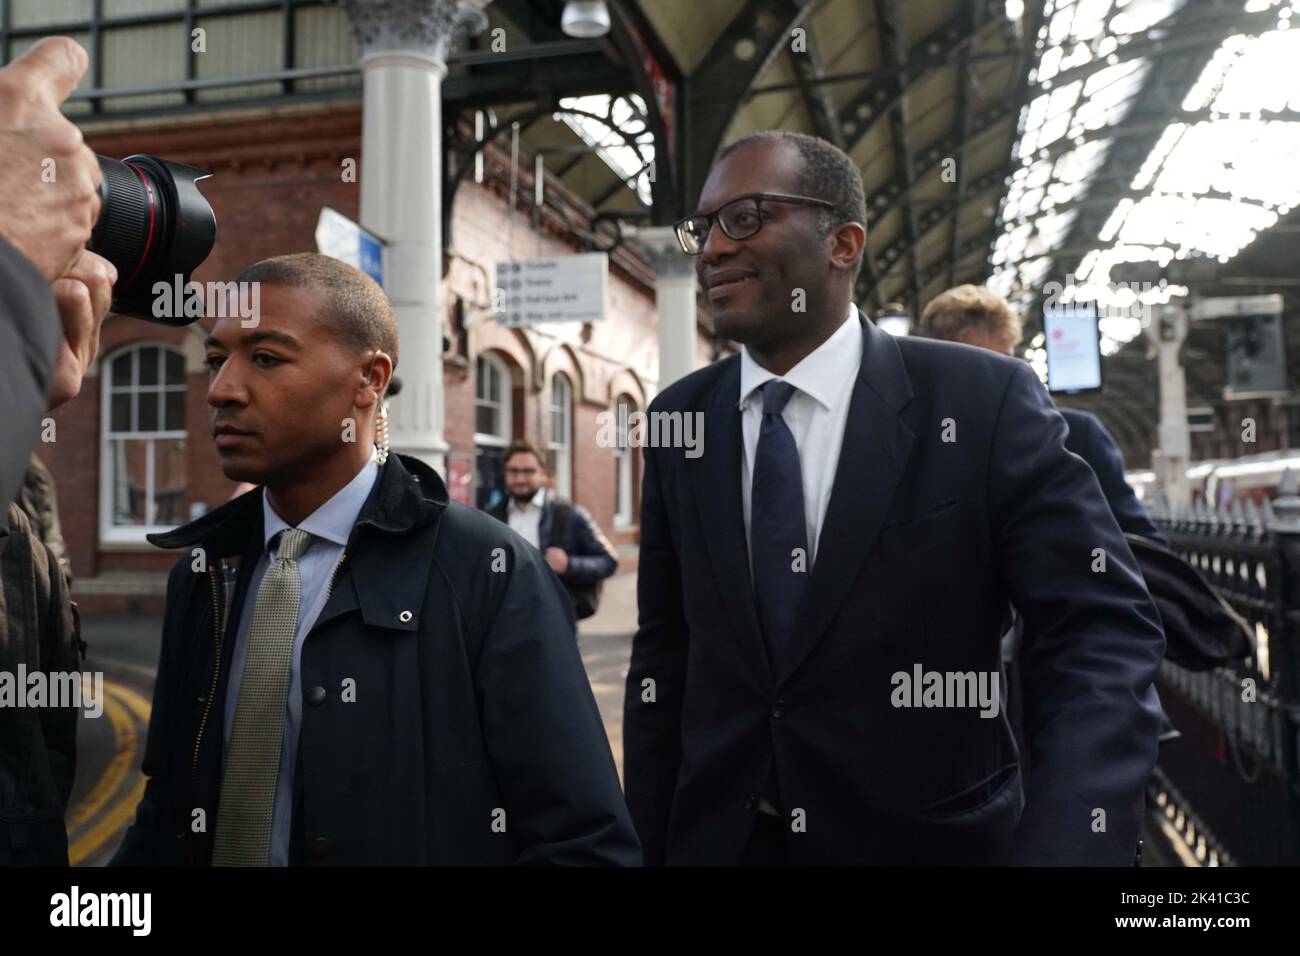 Le Chancelier Kwasi Kwarteng (à droite) arrive à la gare de Darlington pour visiter les entreprises locales. Date de la photo: Jeudi 29 septembre 2022. Banque D'Images